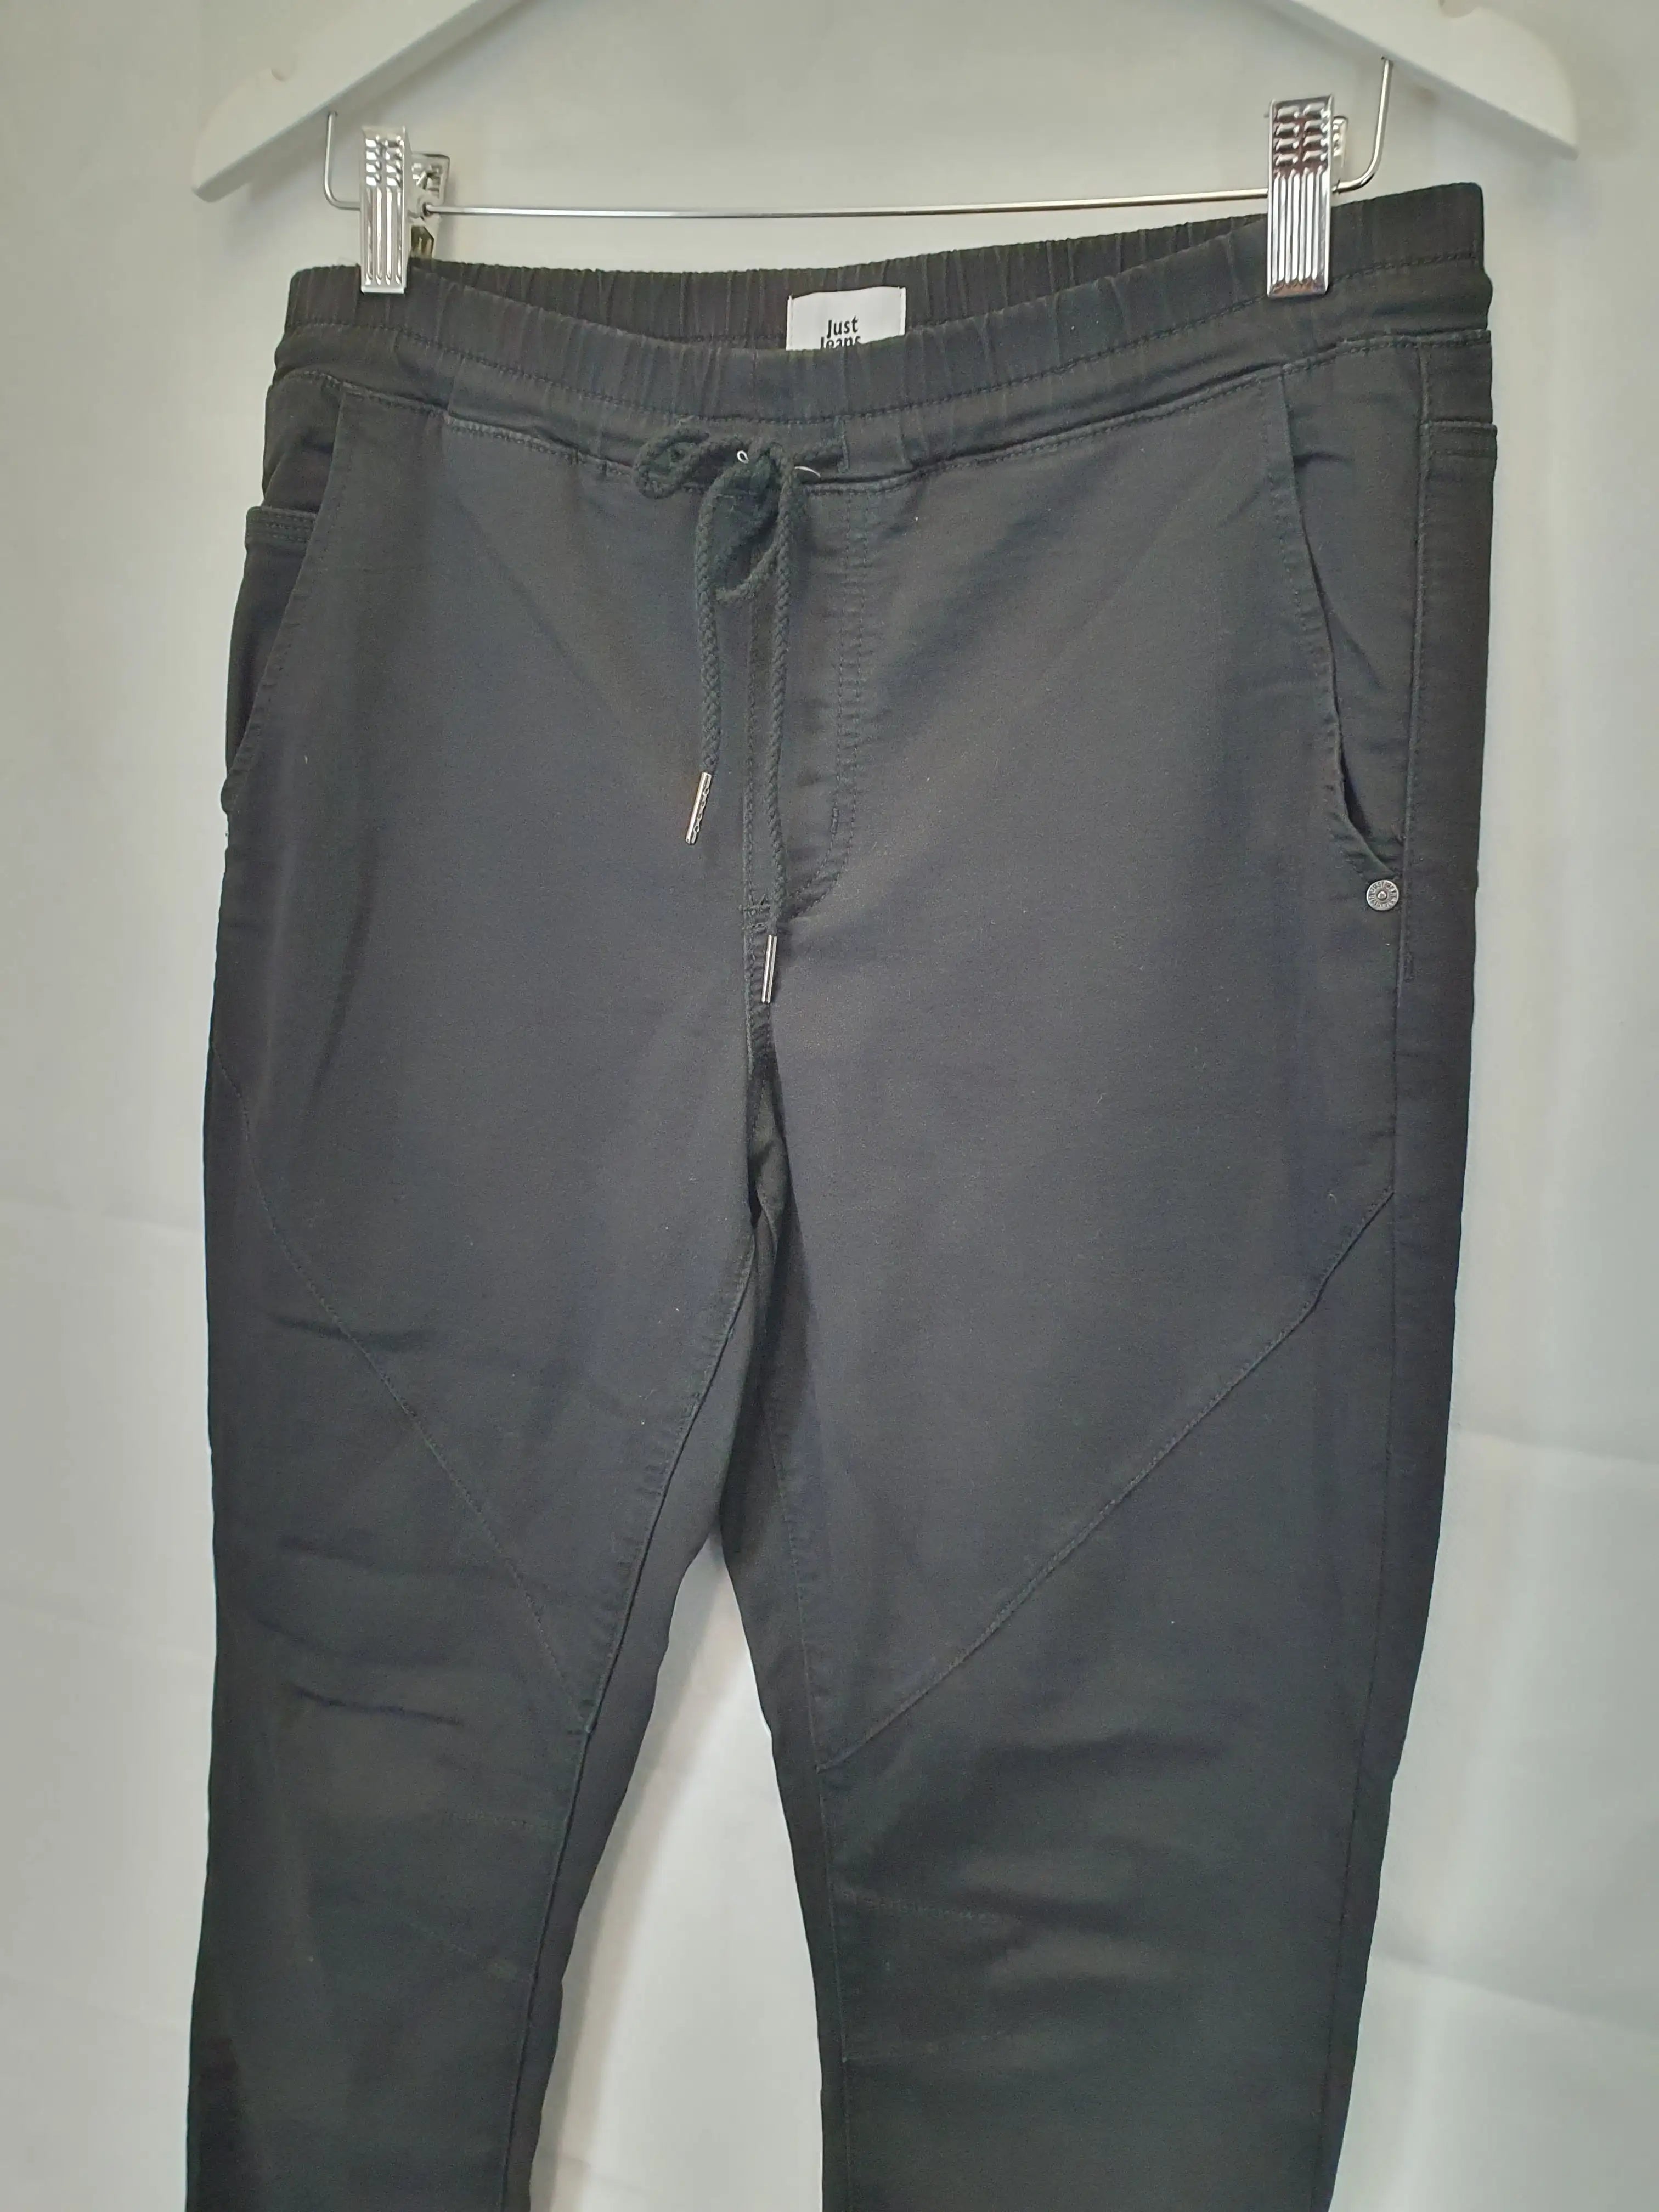 Freeworld Messenger Skinny Jeans Men's 30x31 Dark Blue Denim Pants | eBay